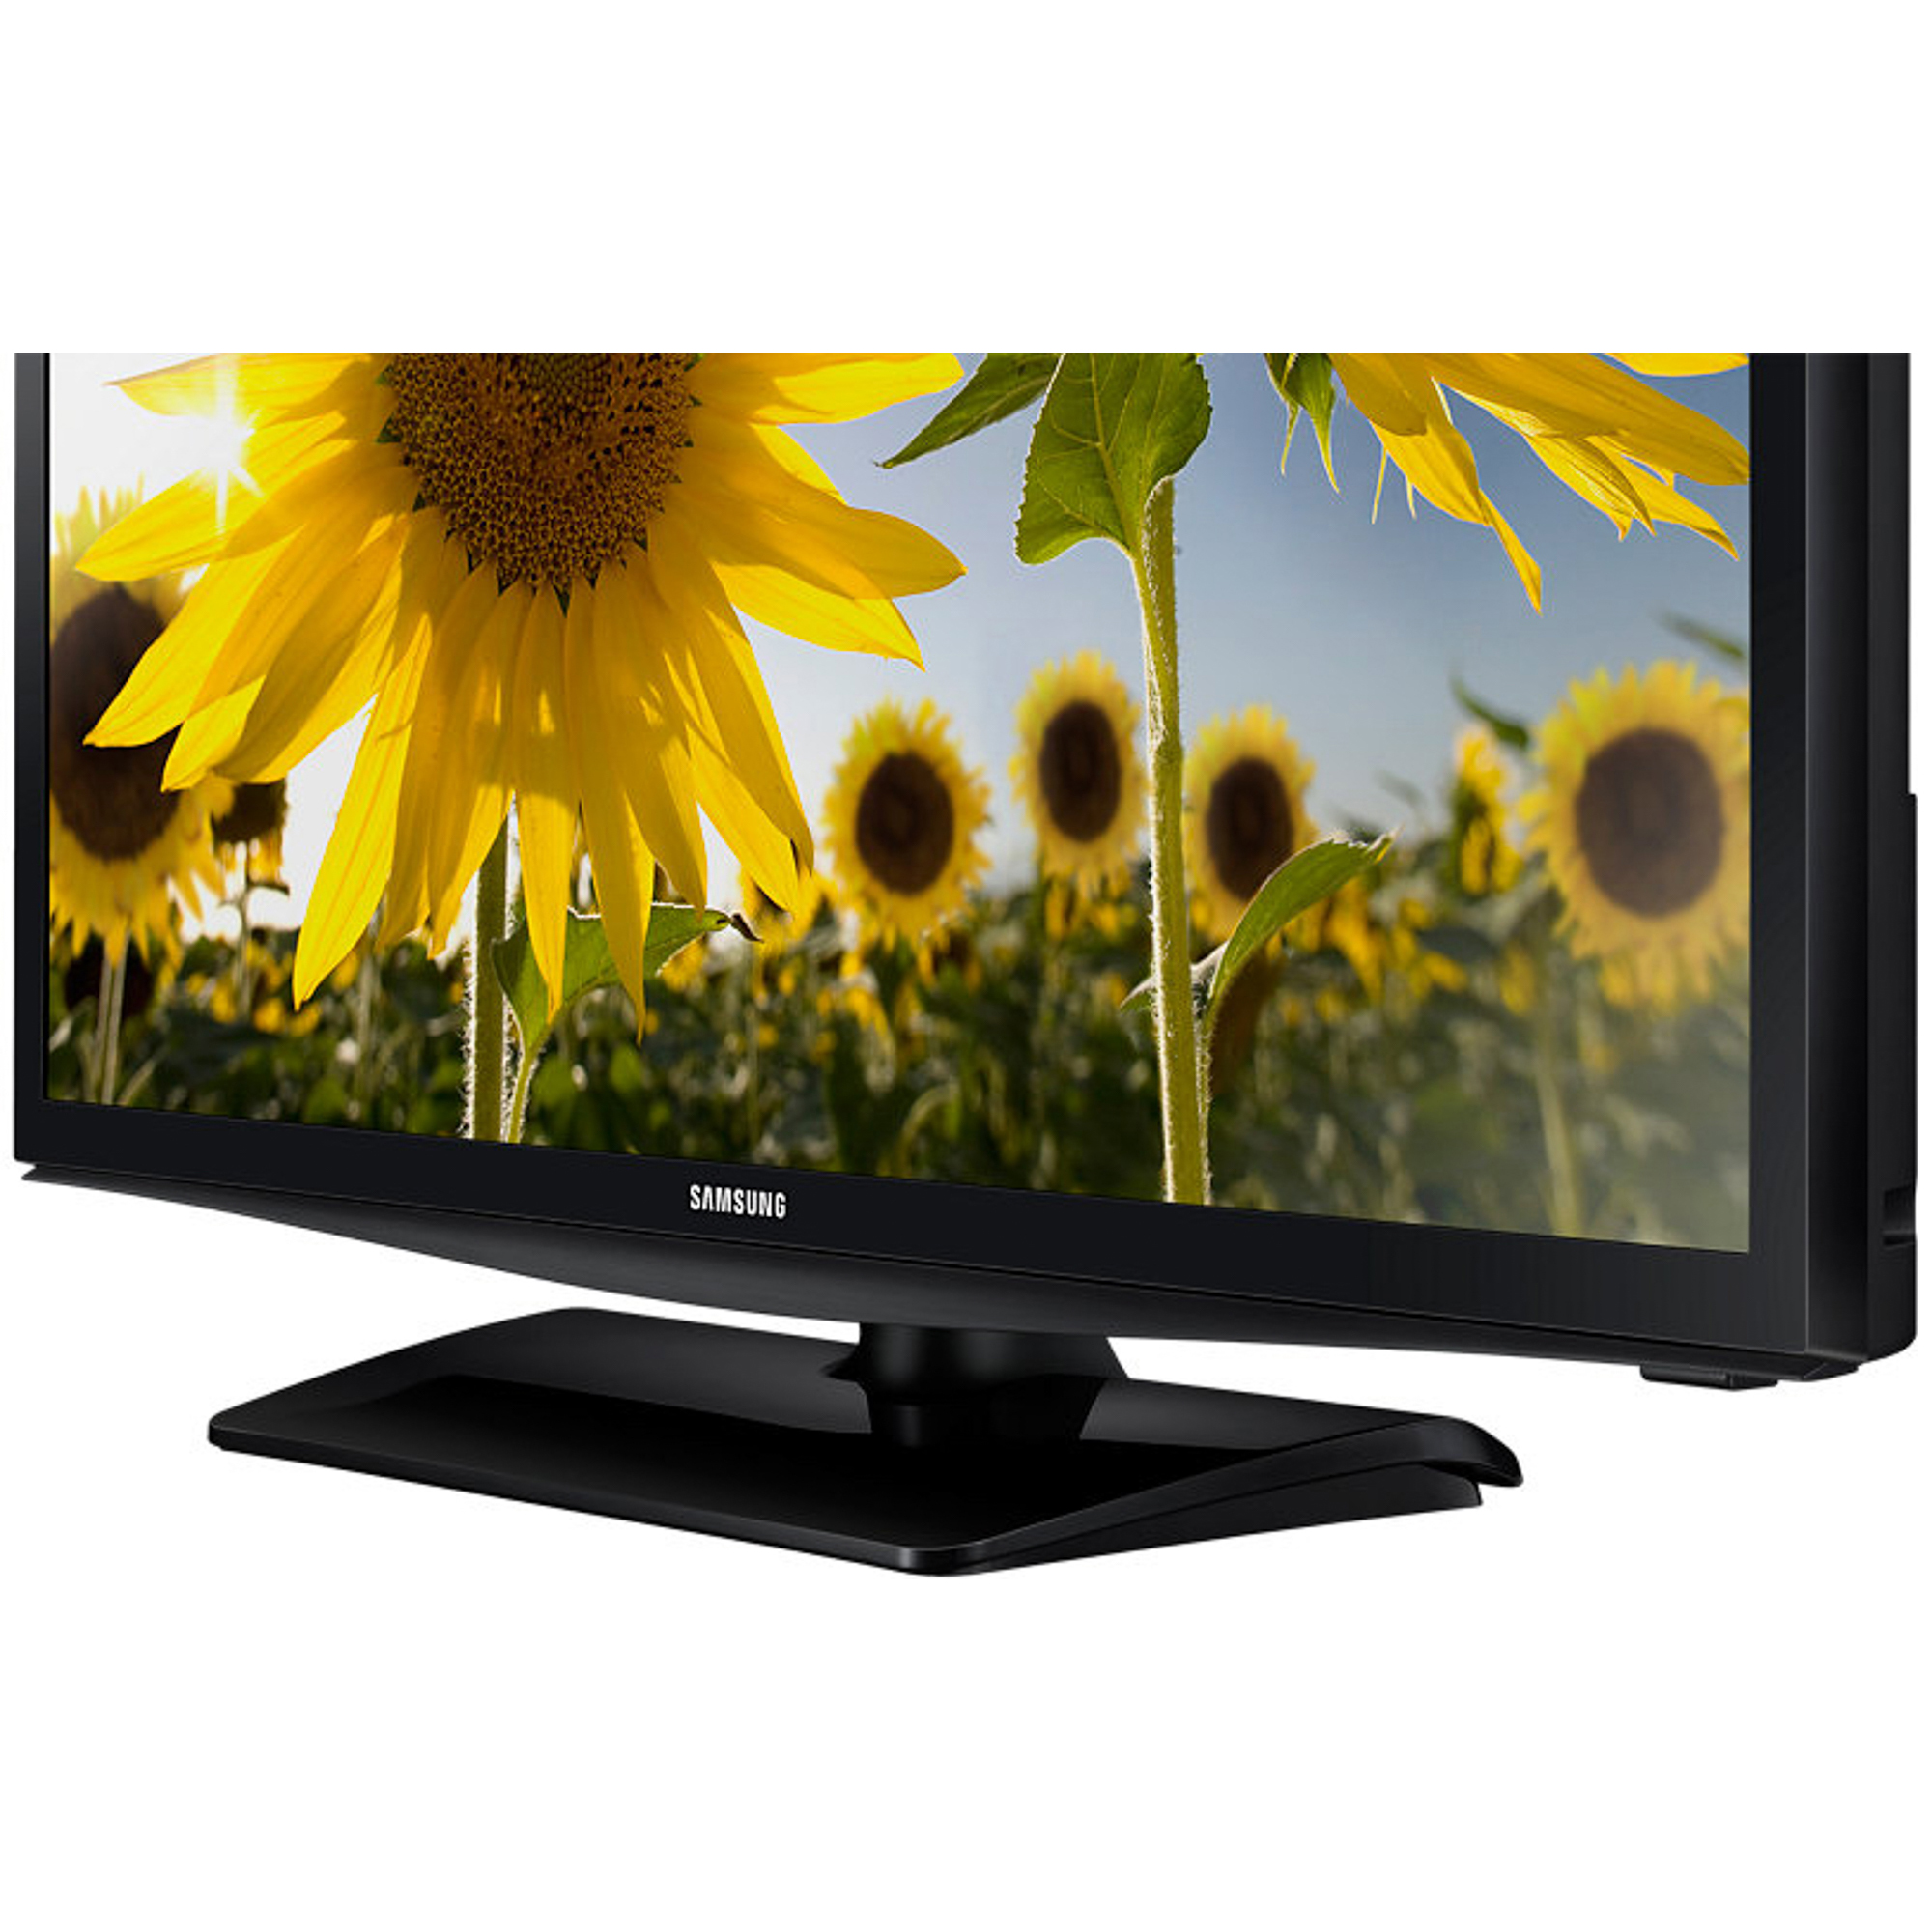 Телевизор Samsung UE24H4080 Black, цвет черный UE24H4080AUXRU - фото 4